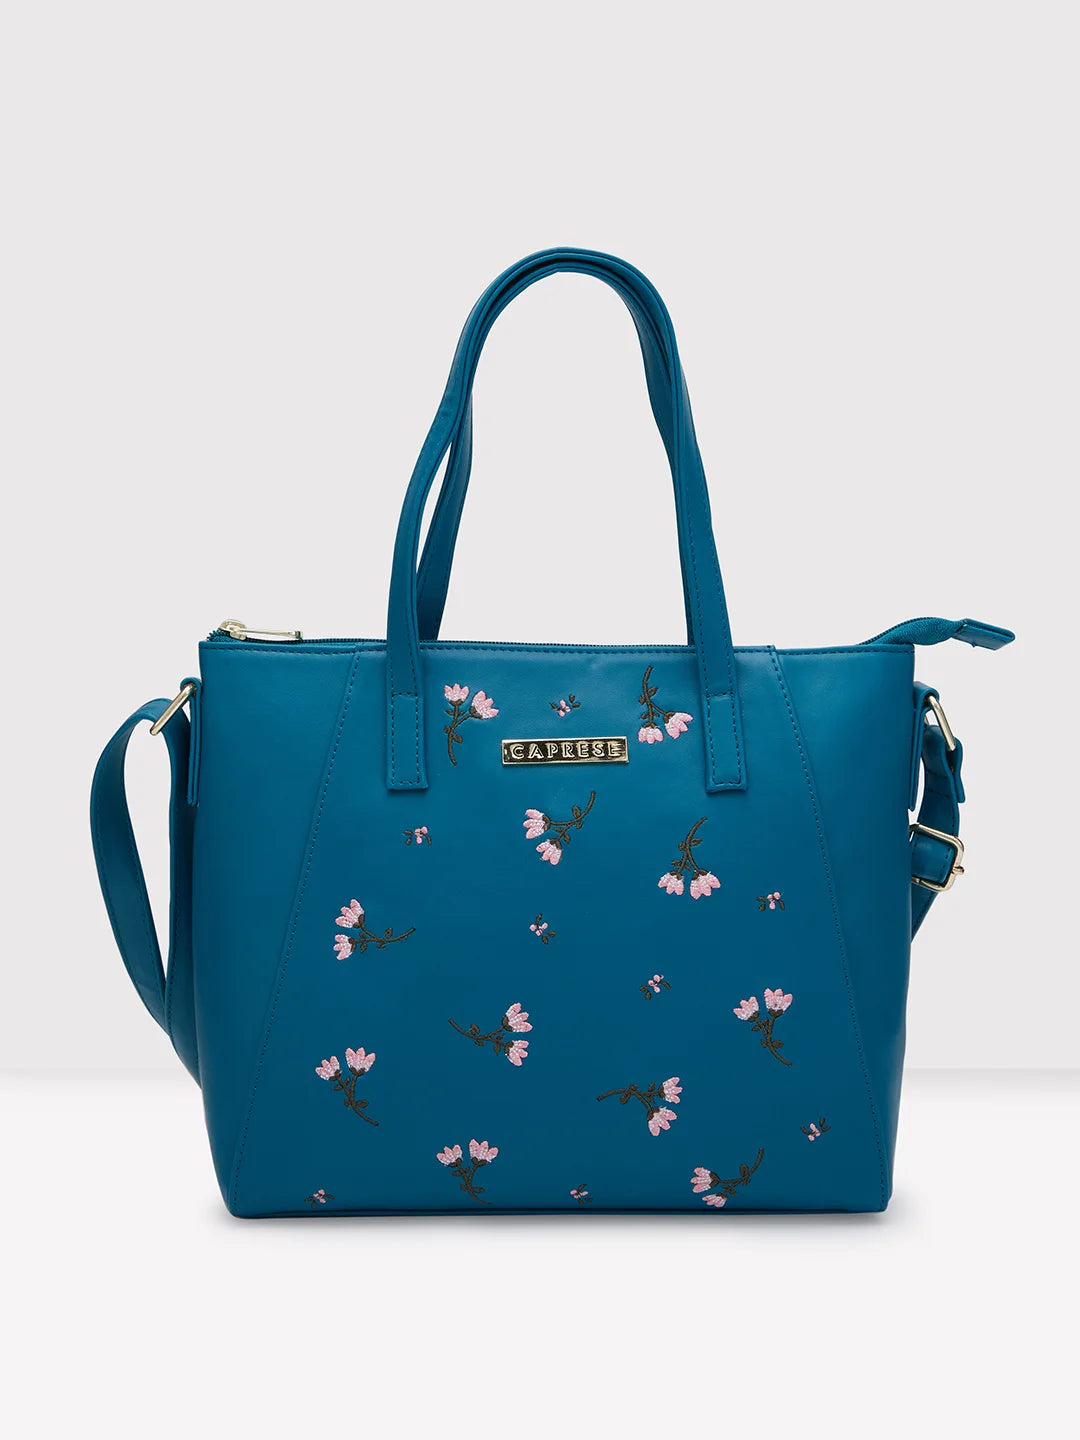 Buy Caprese Teena Women's Tote Bag (Blush) at Amazon.in